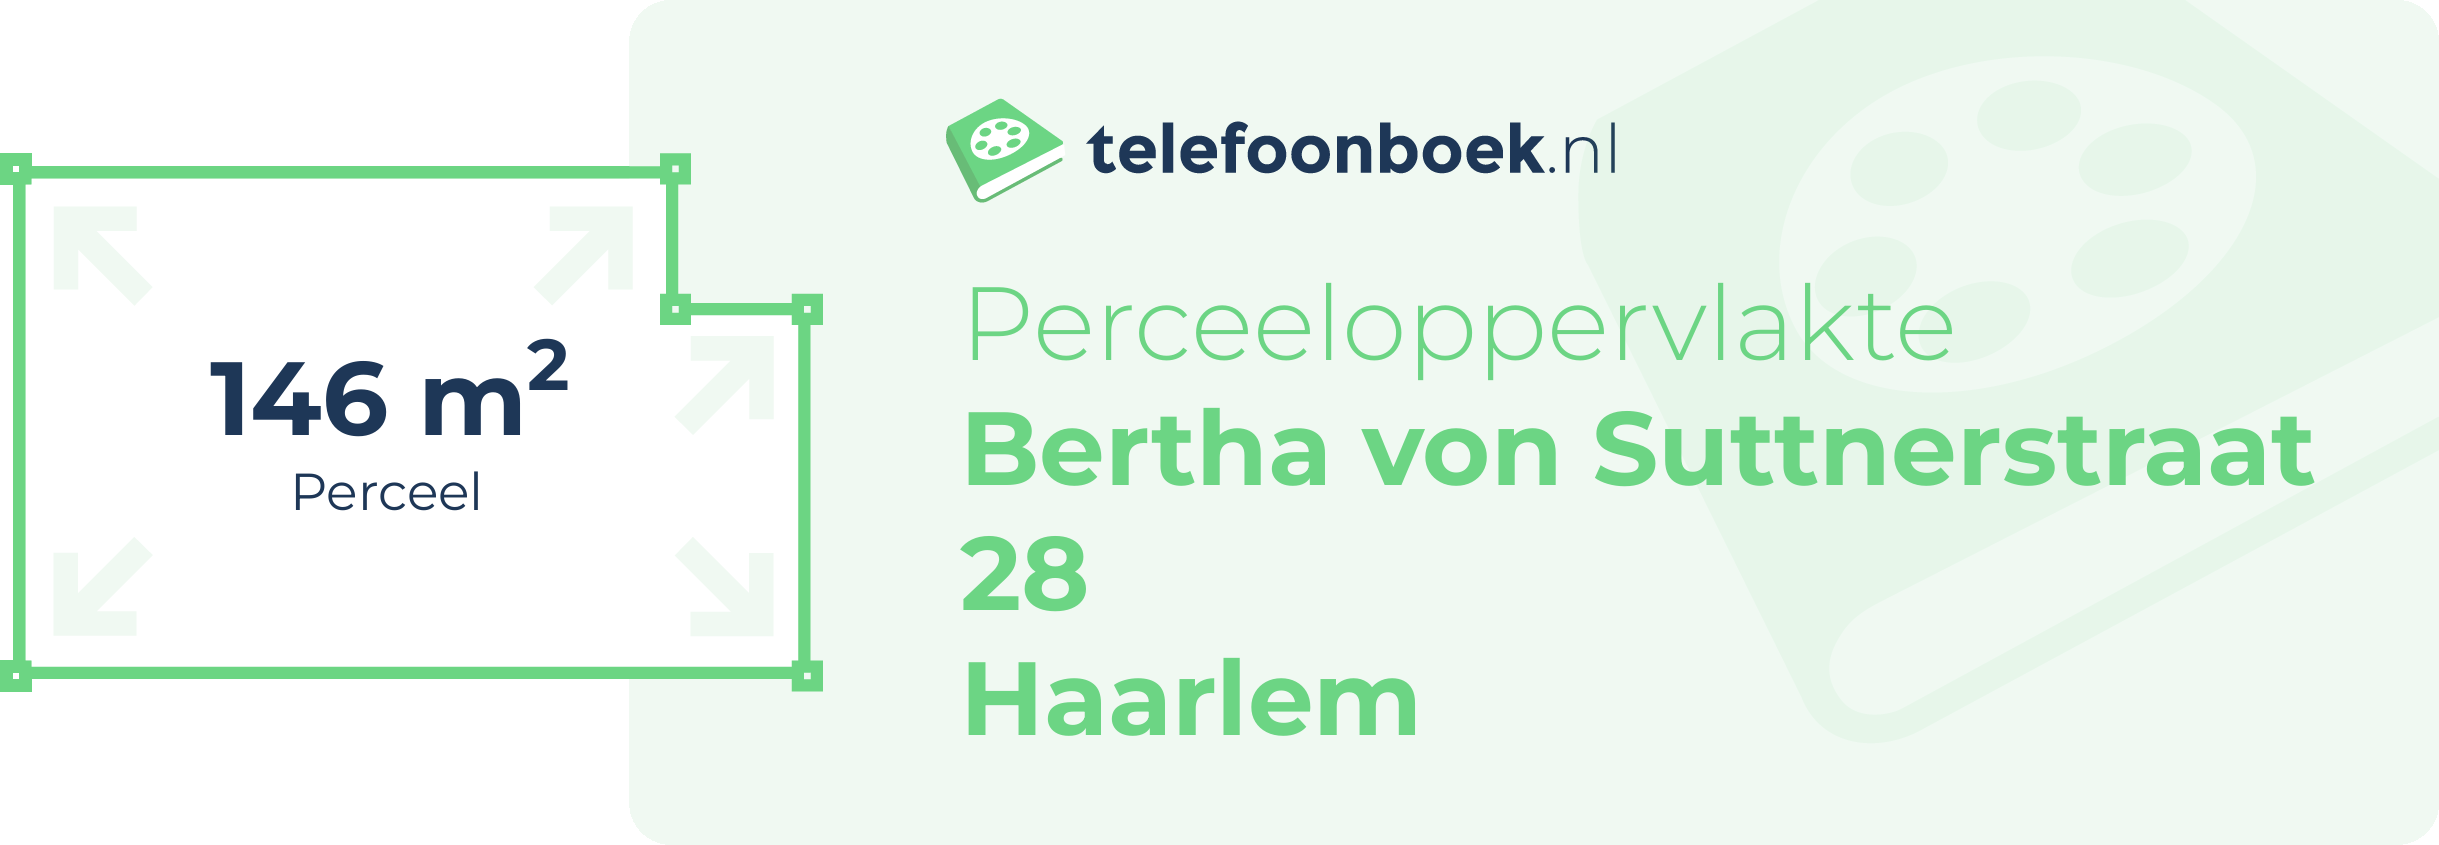 Perceeloppervlakte Bertha Von Suttnerstraat 28 Haarlem